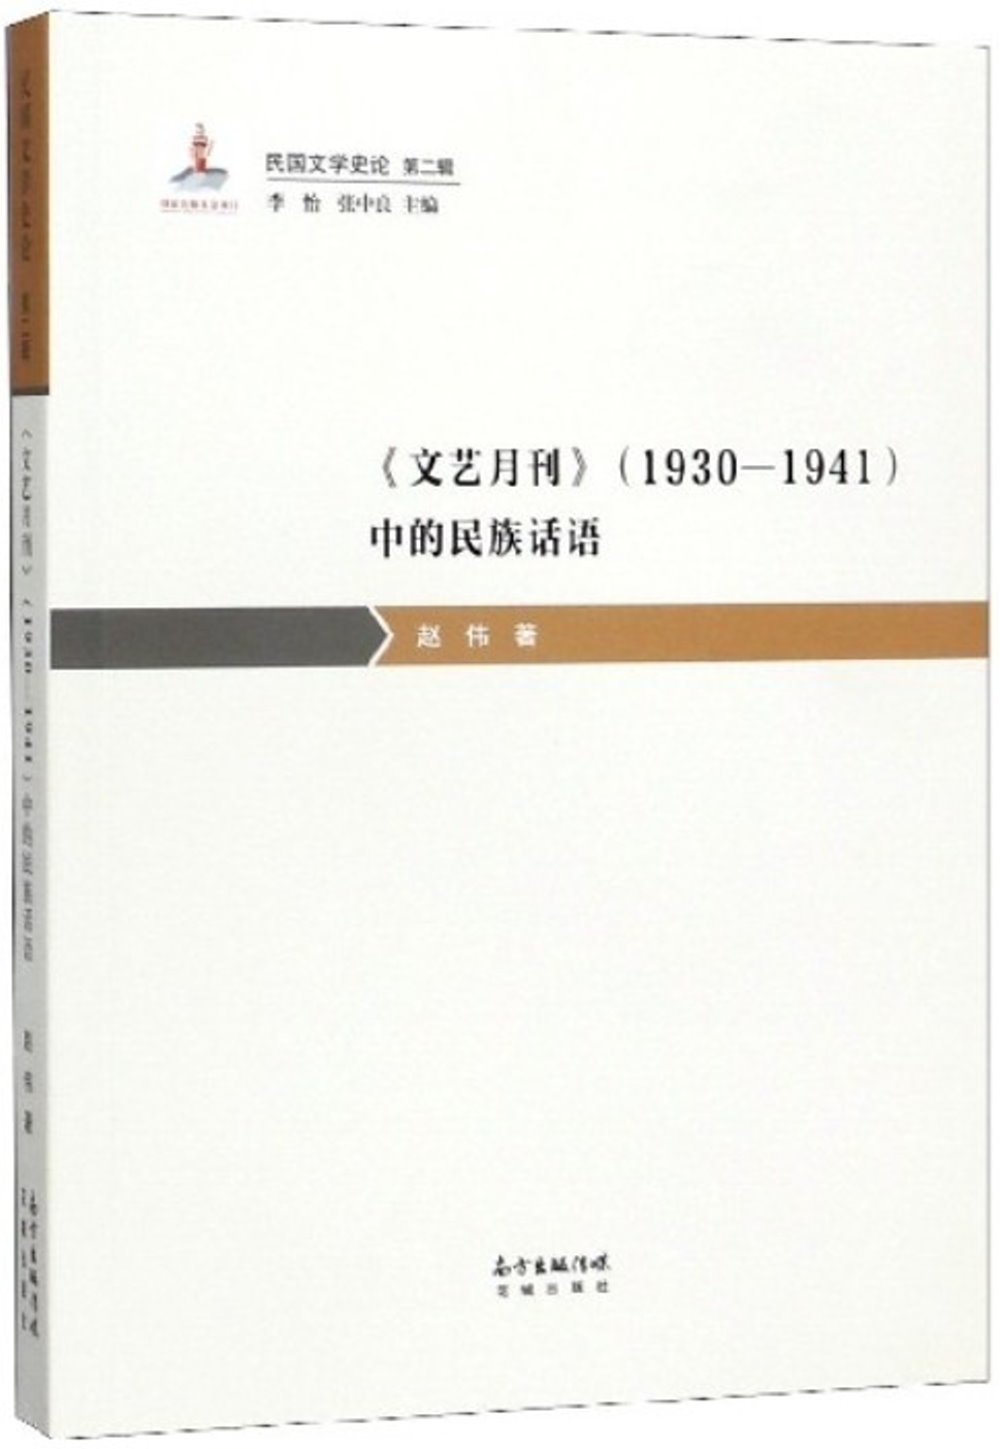 《文藝月刊》（1930-1941）中的民族話語